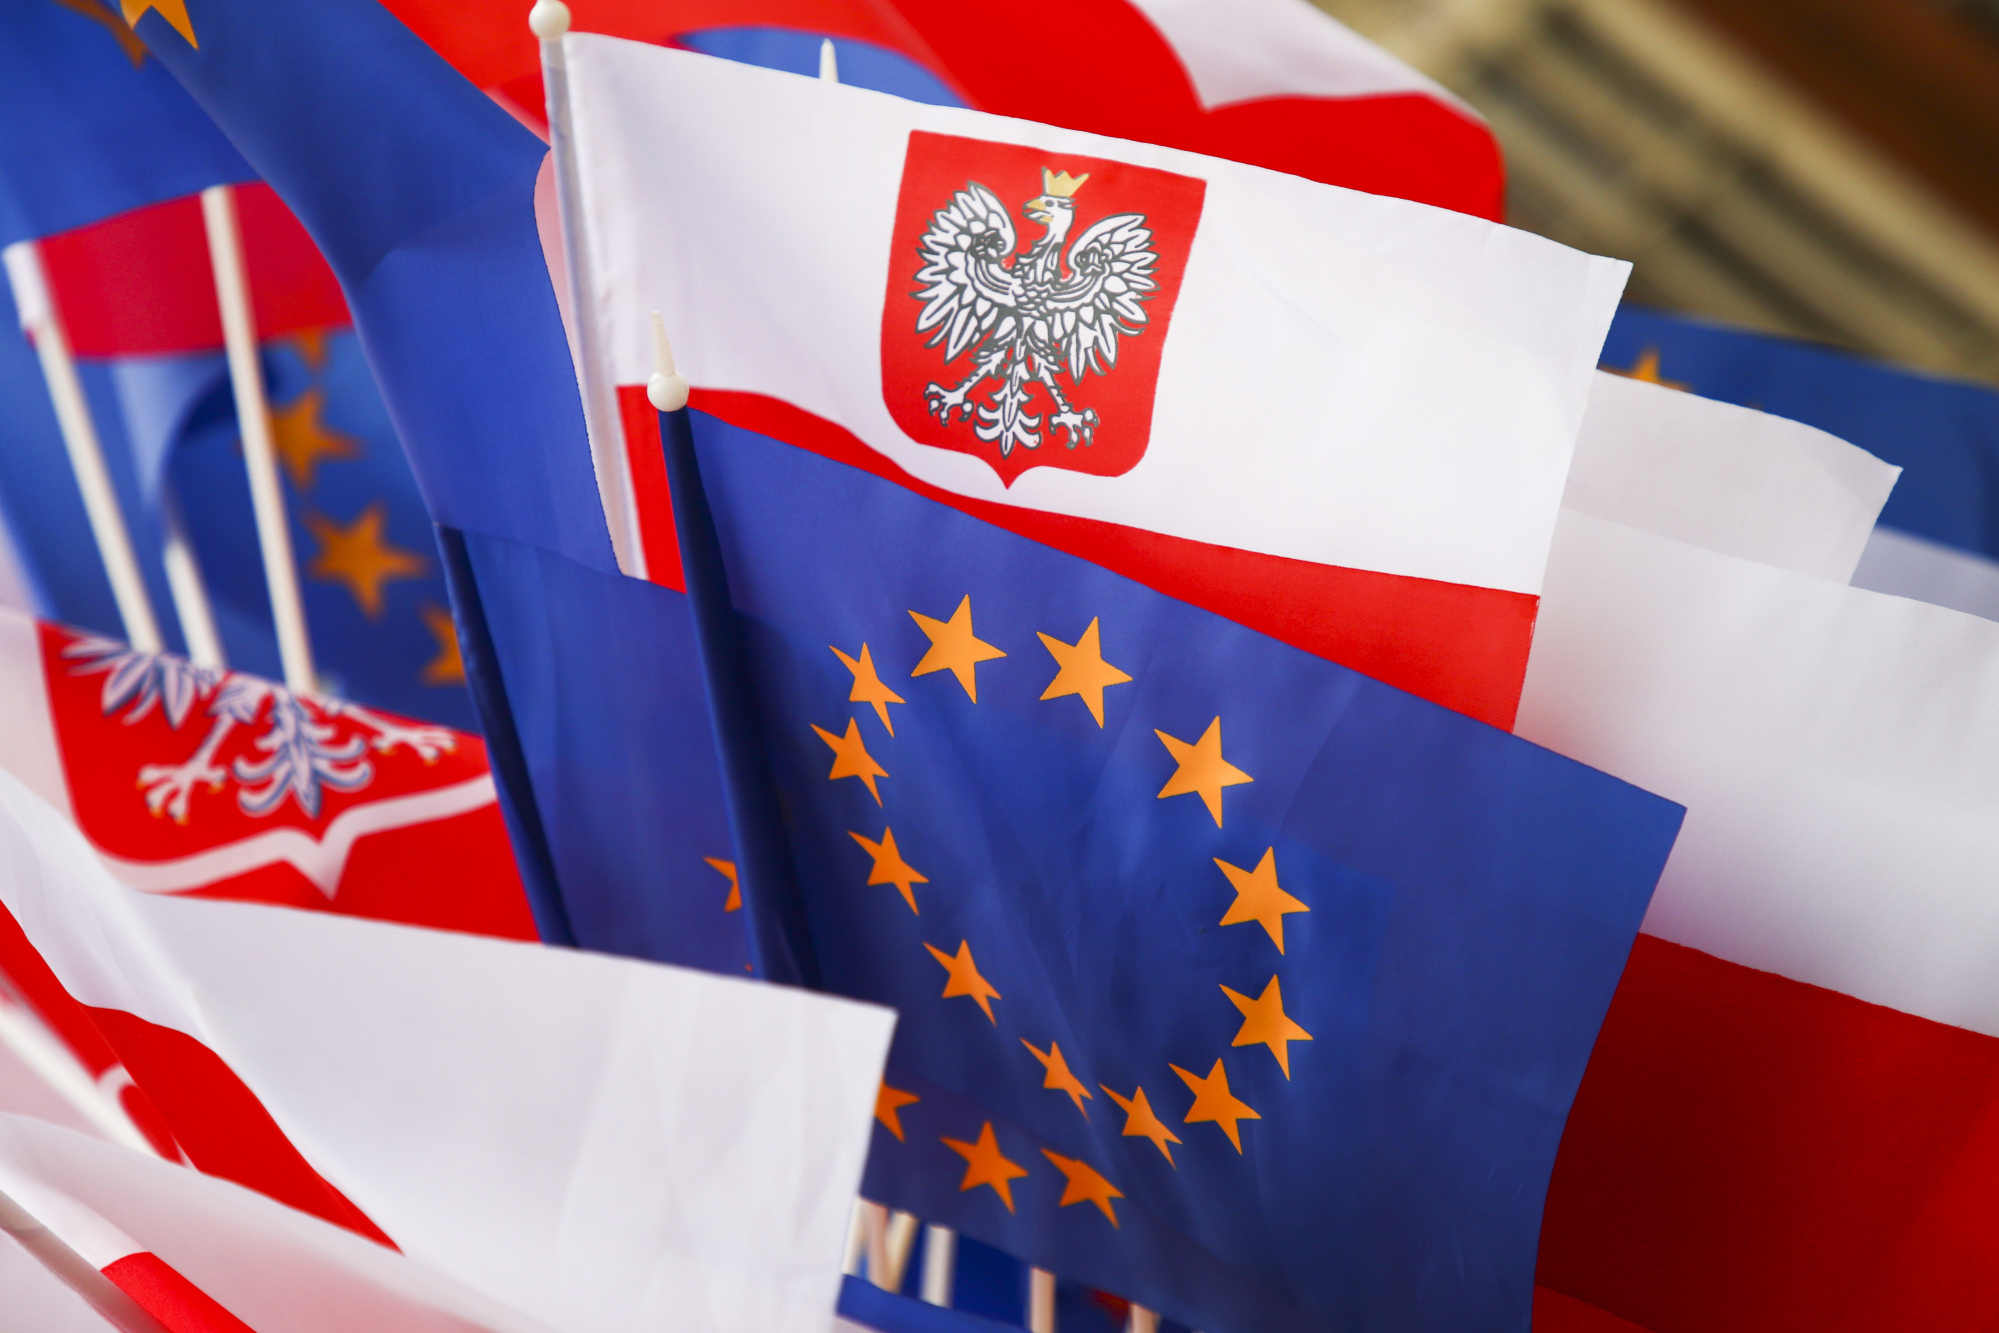 Η ΕΕ εισπράττει πρόστιμο από την Πολωνία παρακρατώντας ευρωπαϊκούς πόρους